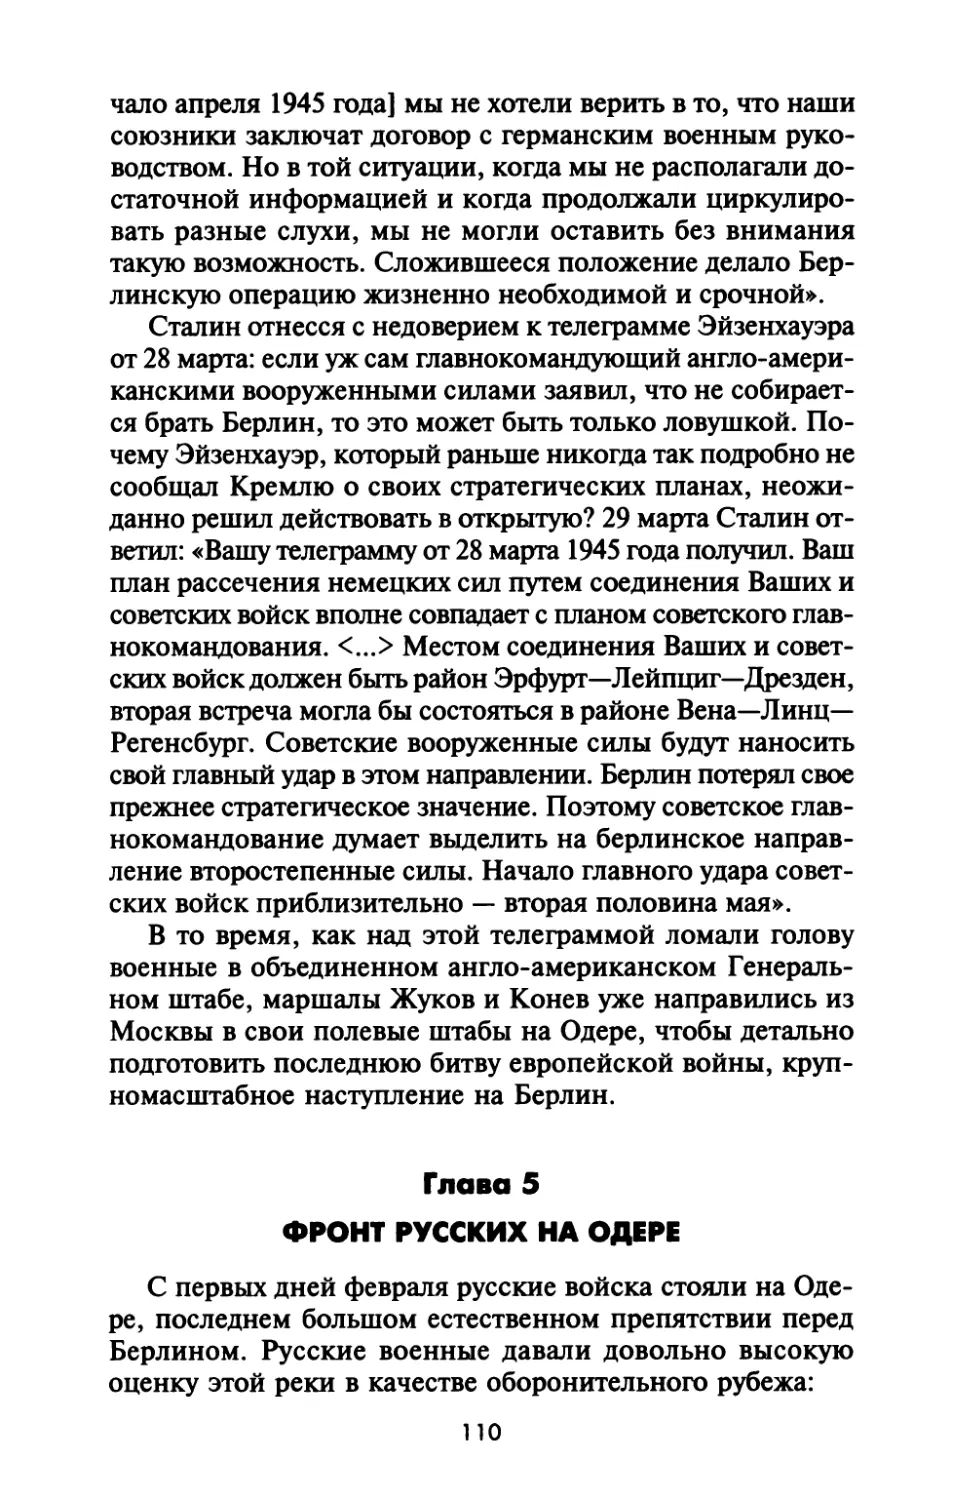 Глава  5.  Фронт  русских  на  Одере